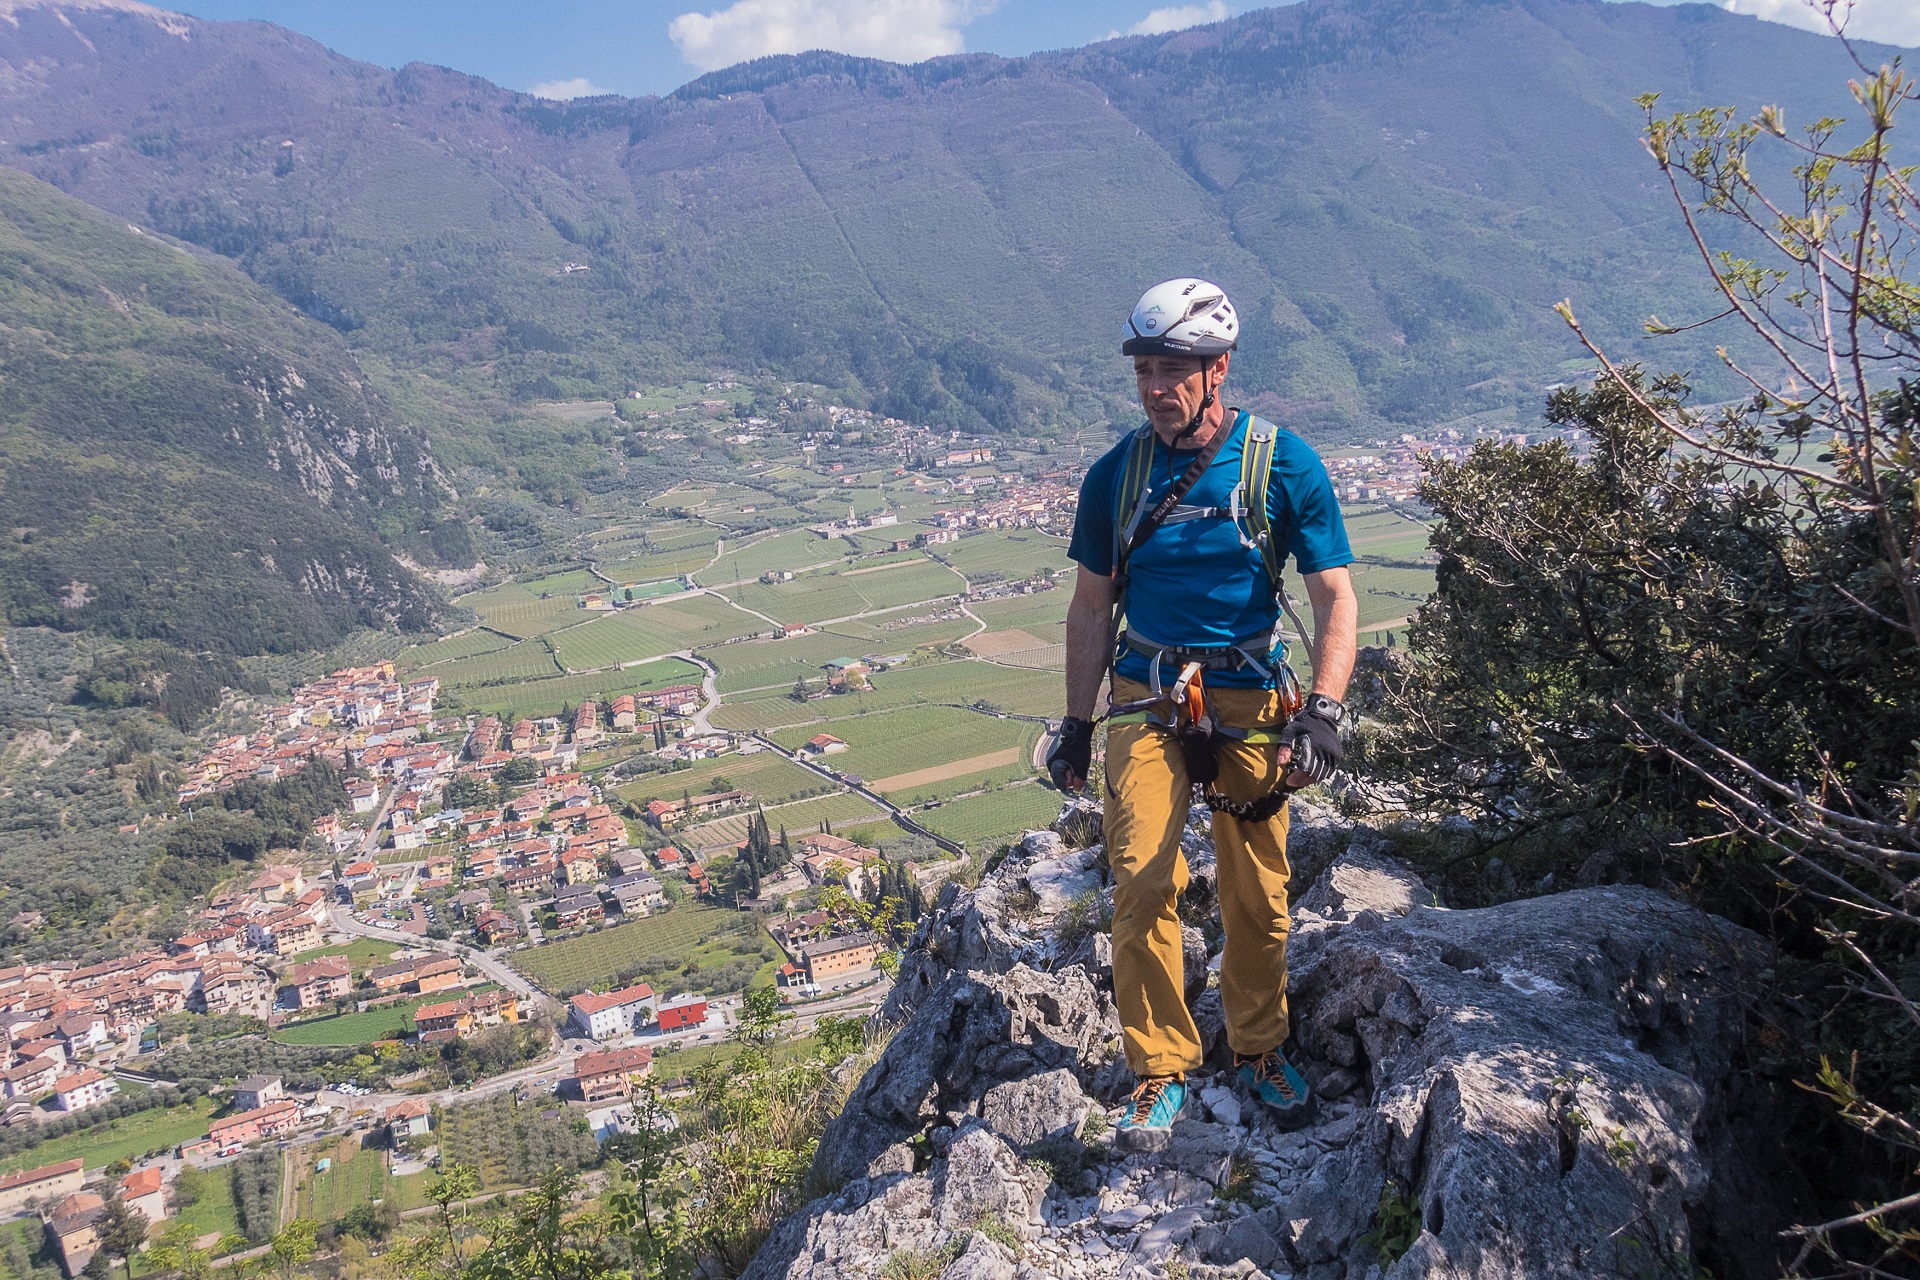 Wyjście z ferraty Cima Colodri i widok na Monti del Garda